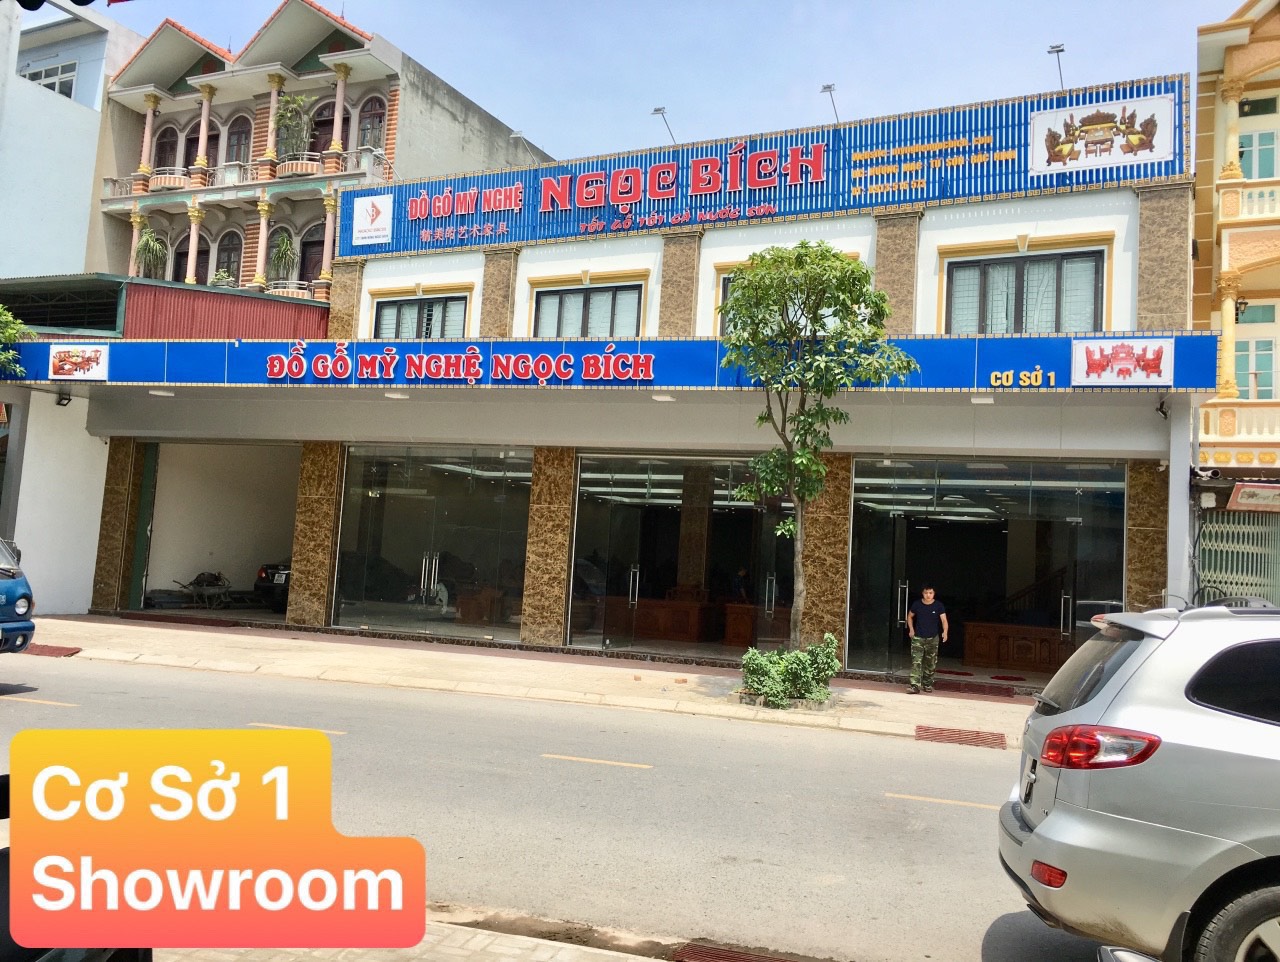 Cơ sở 1 : Showroom Đồ Gỗ Mỹ Nghệ Ngọc Bích tại Thôn Hương Mạc – Tx. Từ Sơn – Bắc Ninh